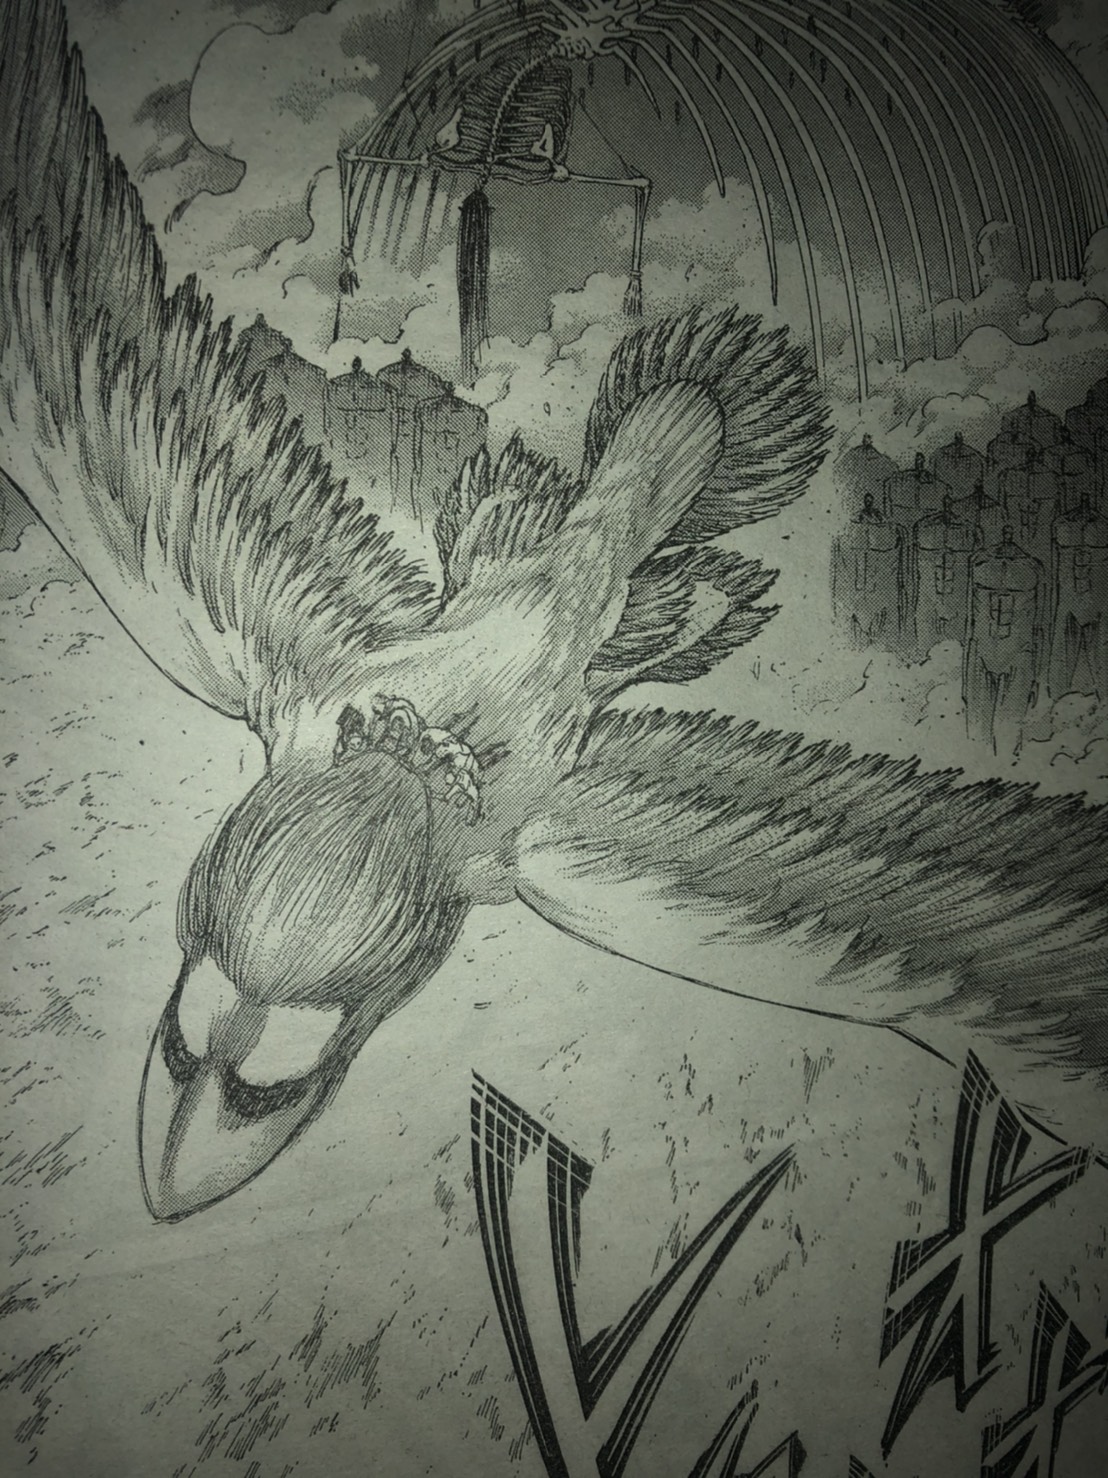 ファルコの鳥巨人のアニライナーへの影響 進撃の巨人136話以降考察 ワンピース考察 甲塚誓ノ介のいい芝居してますね